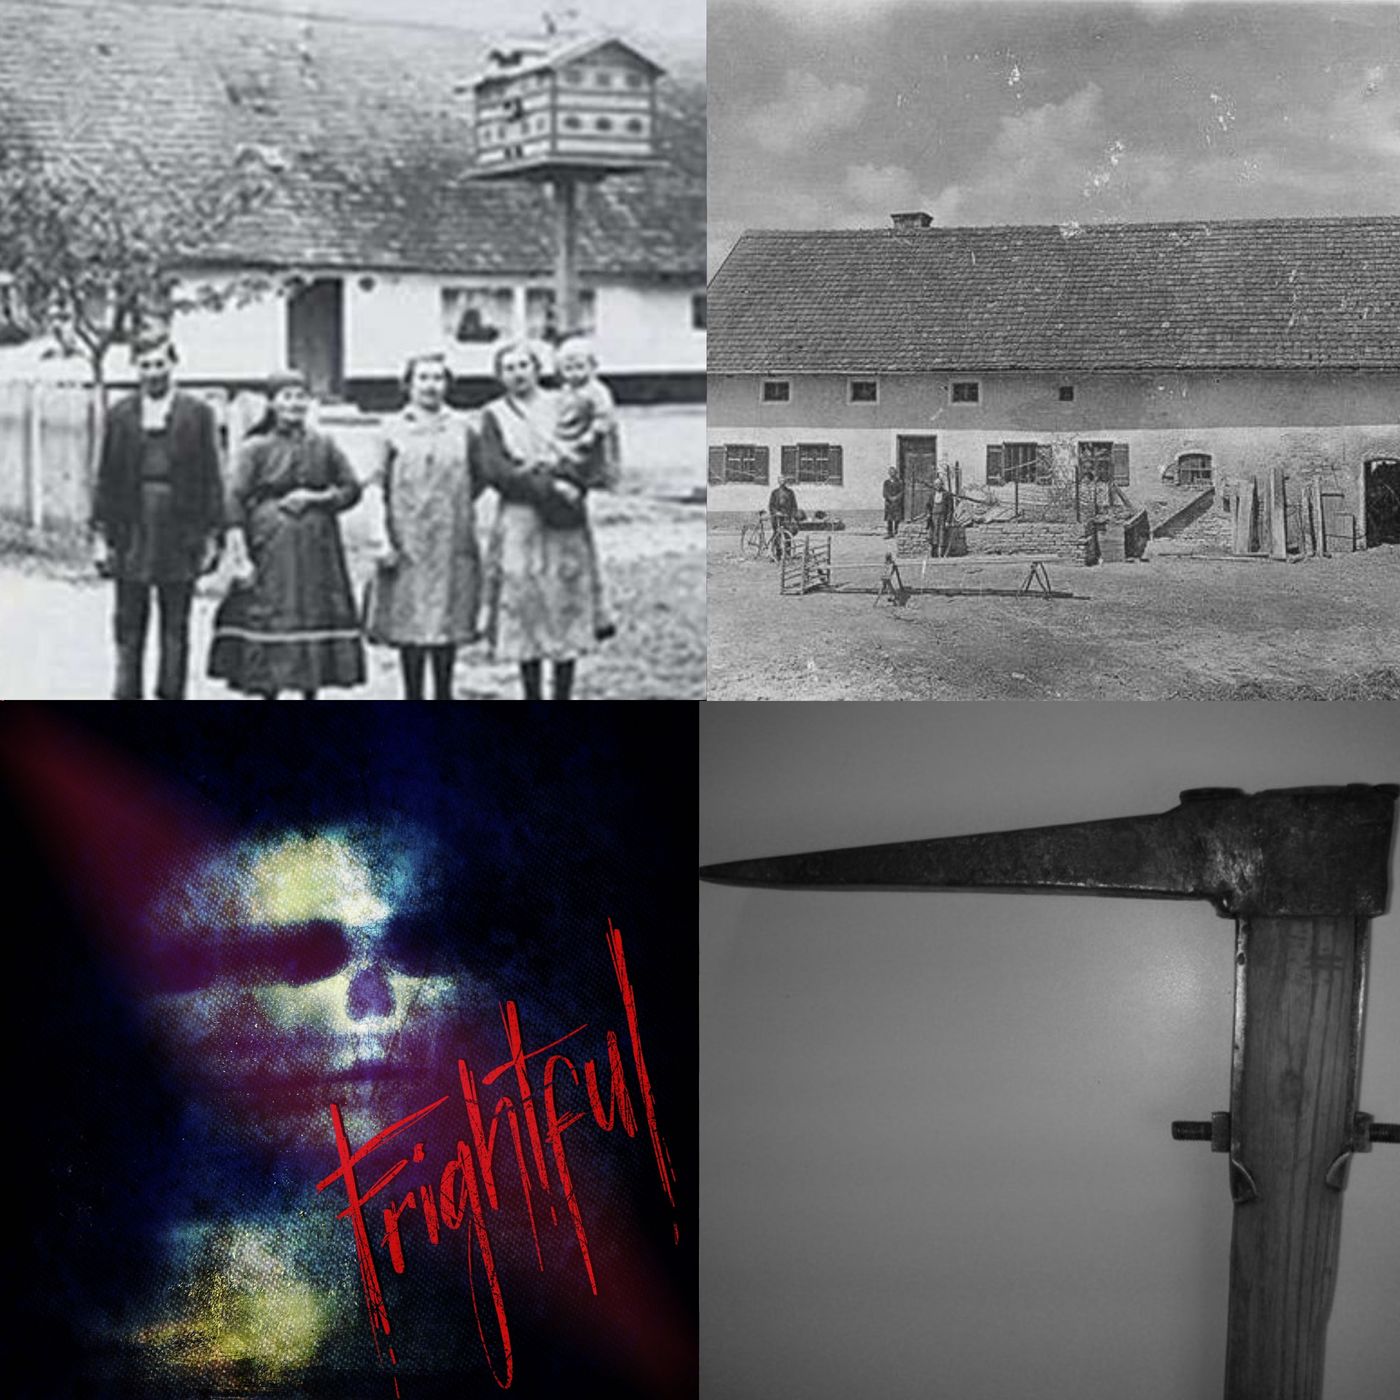 50: The Ghost Farm Murders (The Hinterkaifeck Case)